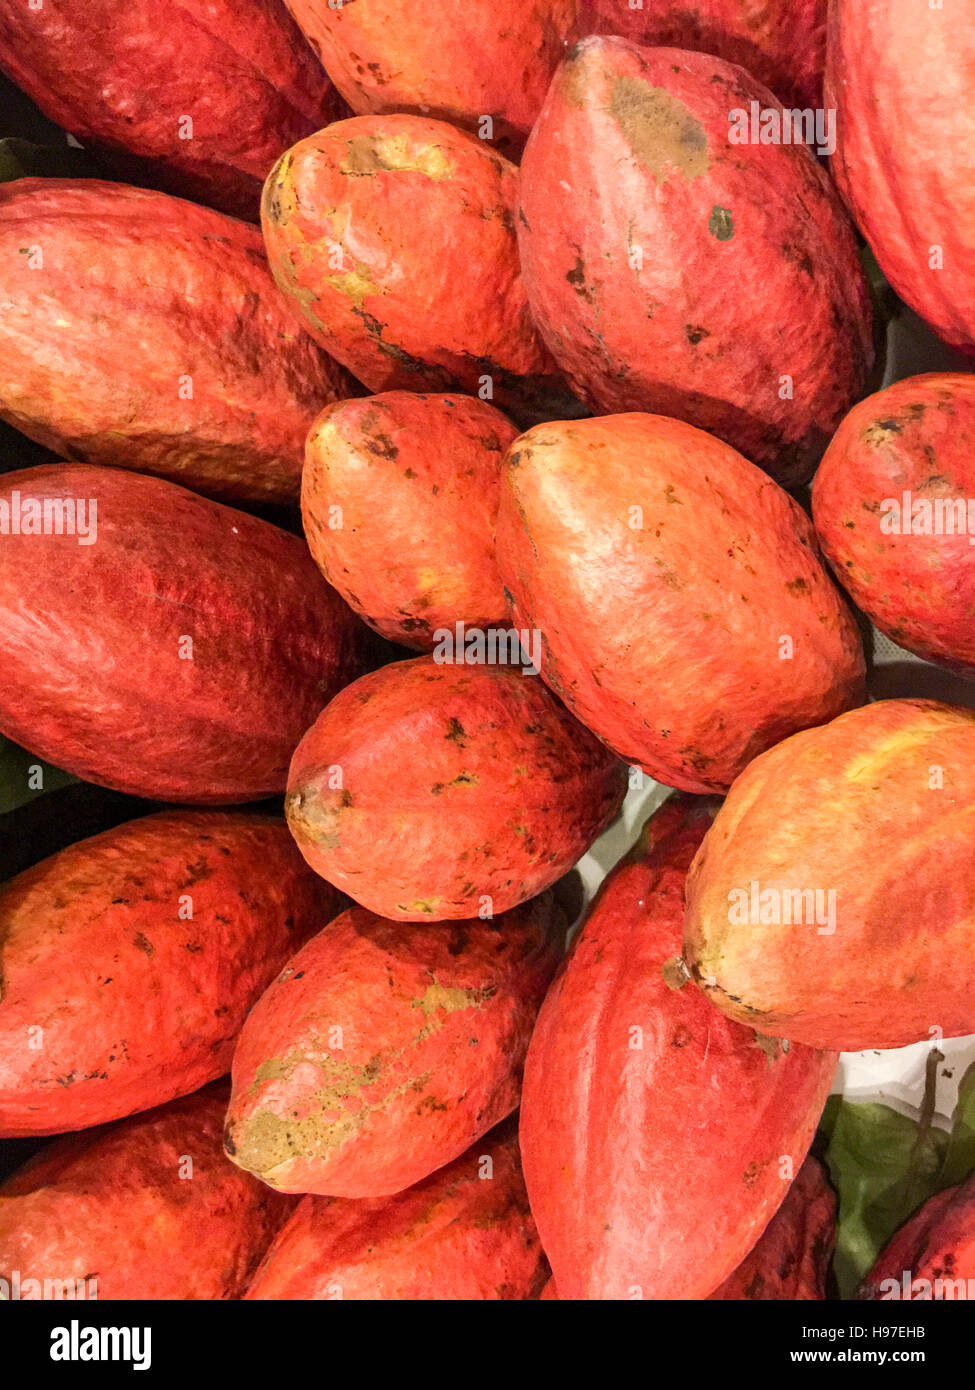 Les images RAW de cacao rouge pour l'affichage au cours de l'exposition locale. Banque D'Images